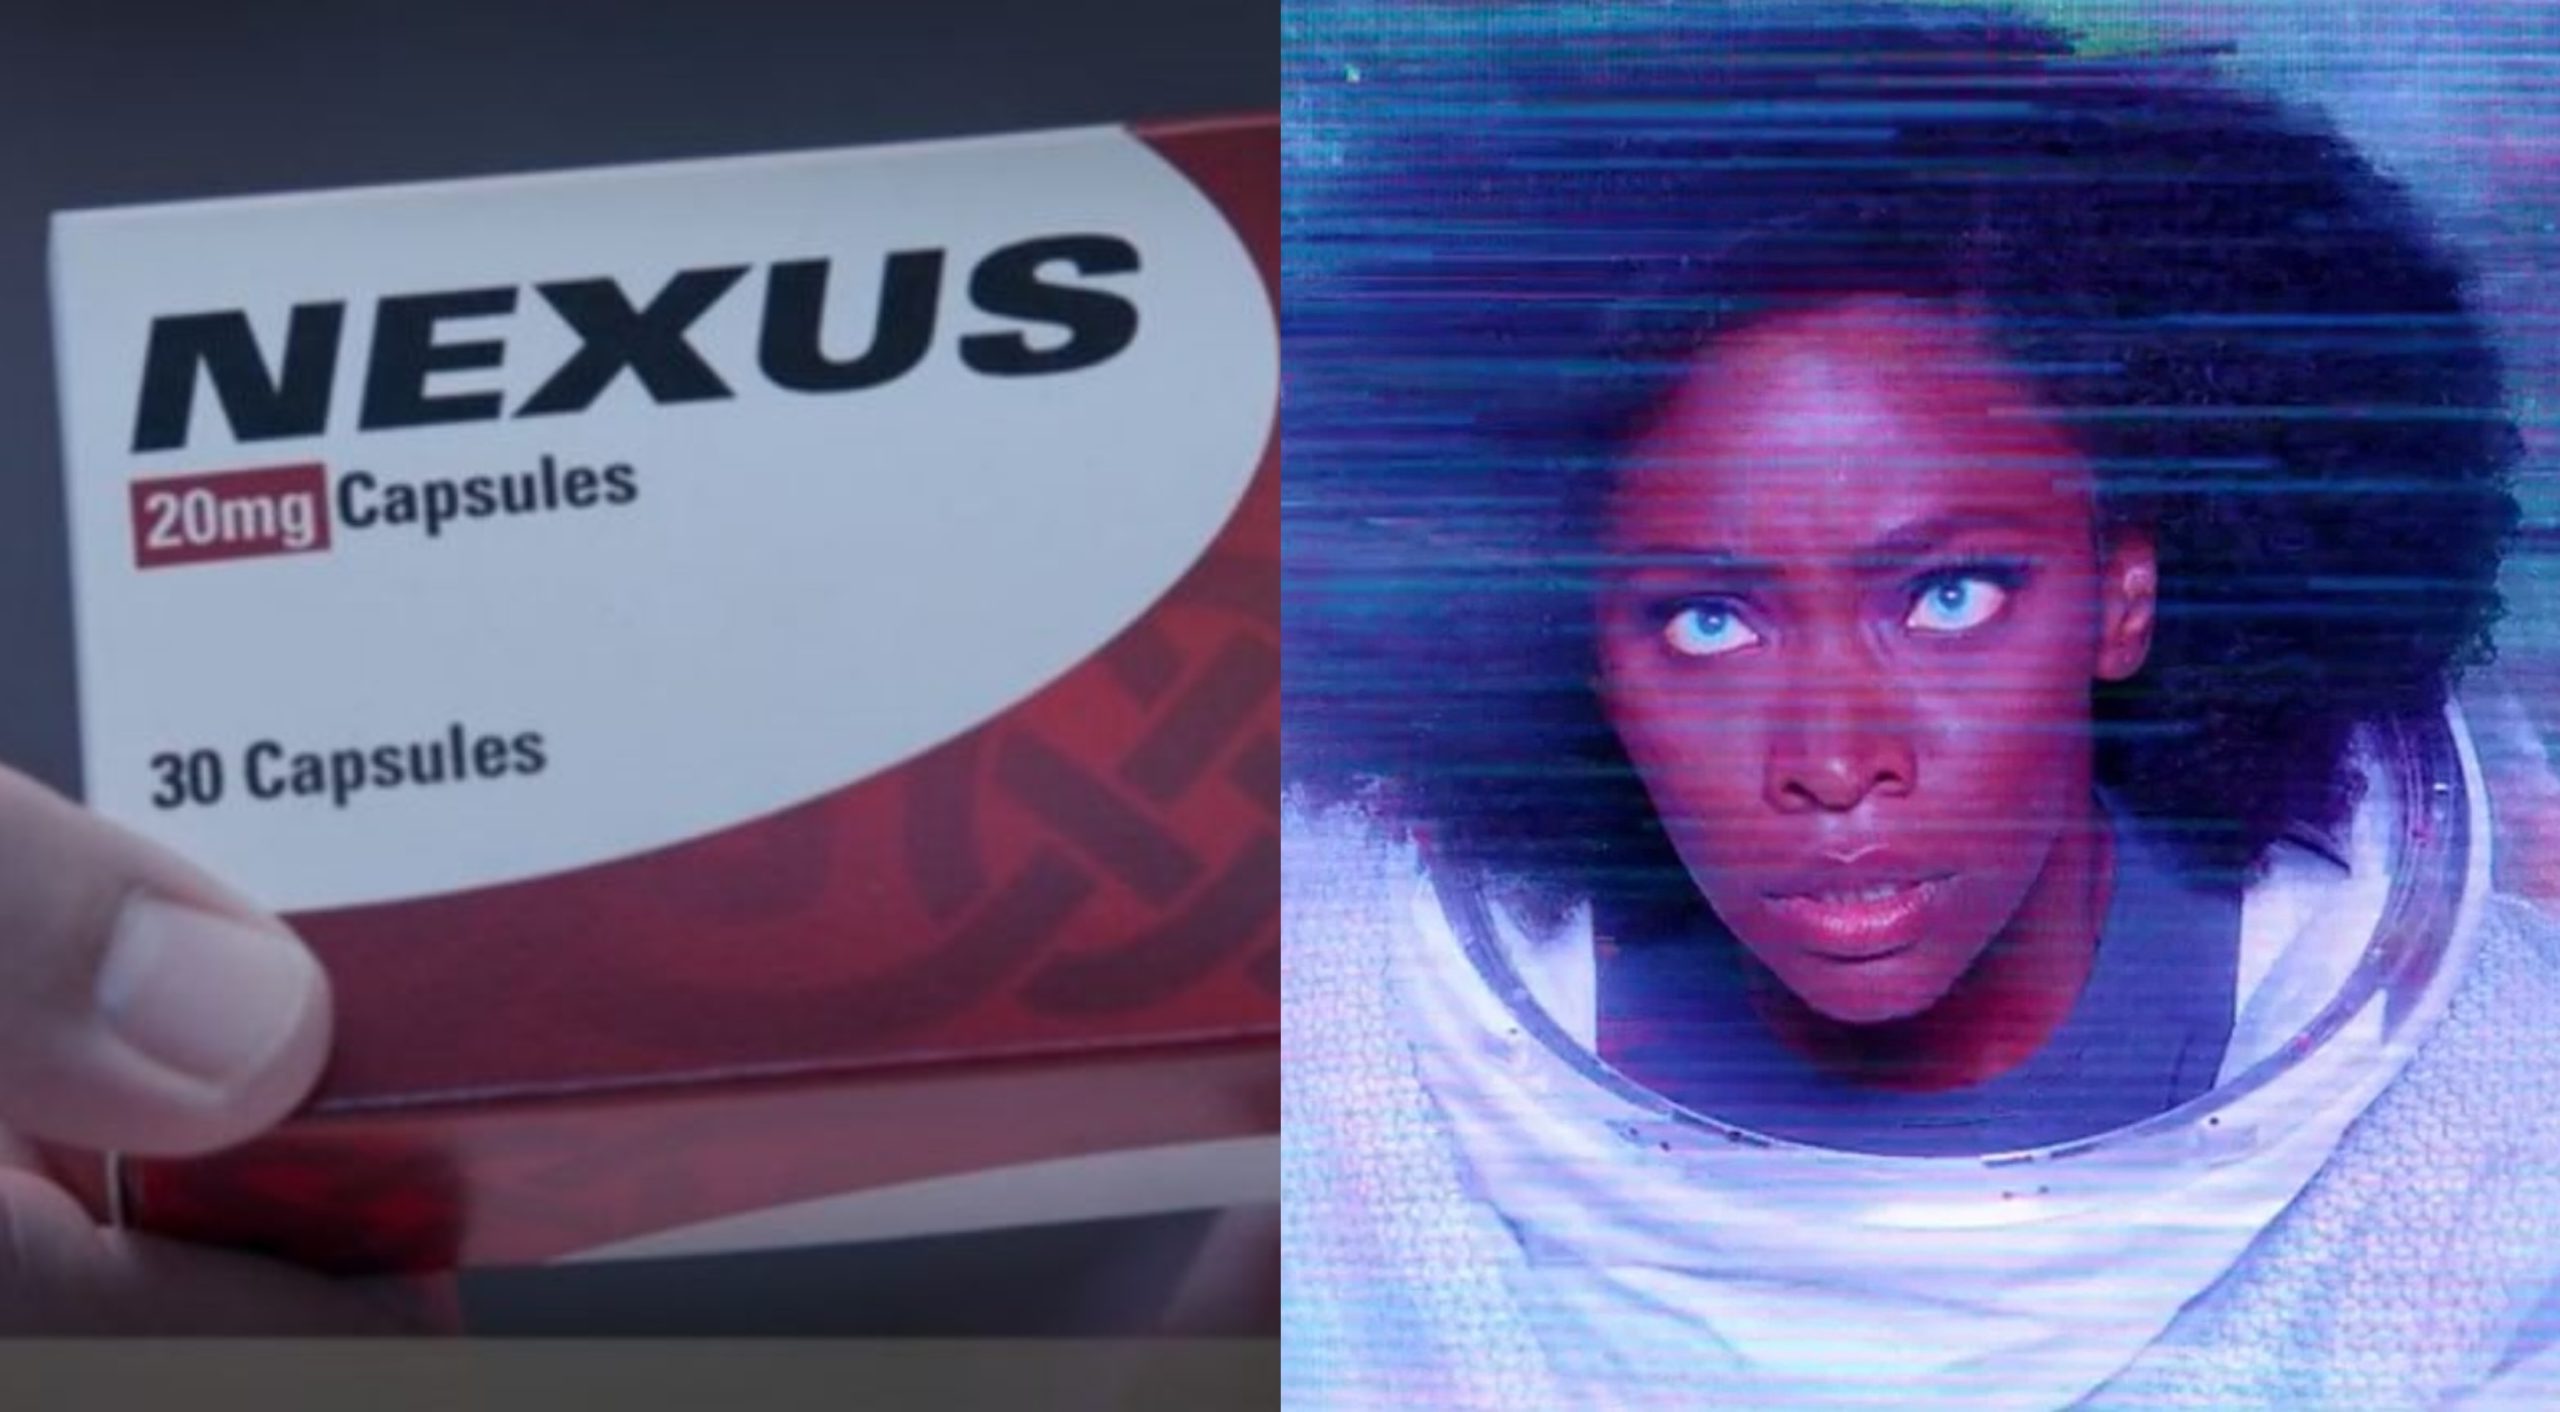 Cuál es el significado del comercial de Nexus de 'WandaVision'?